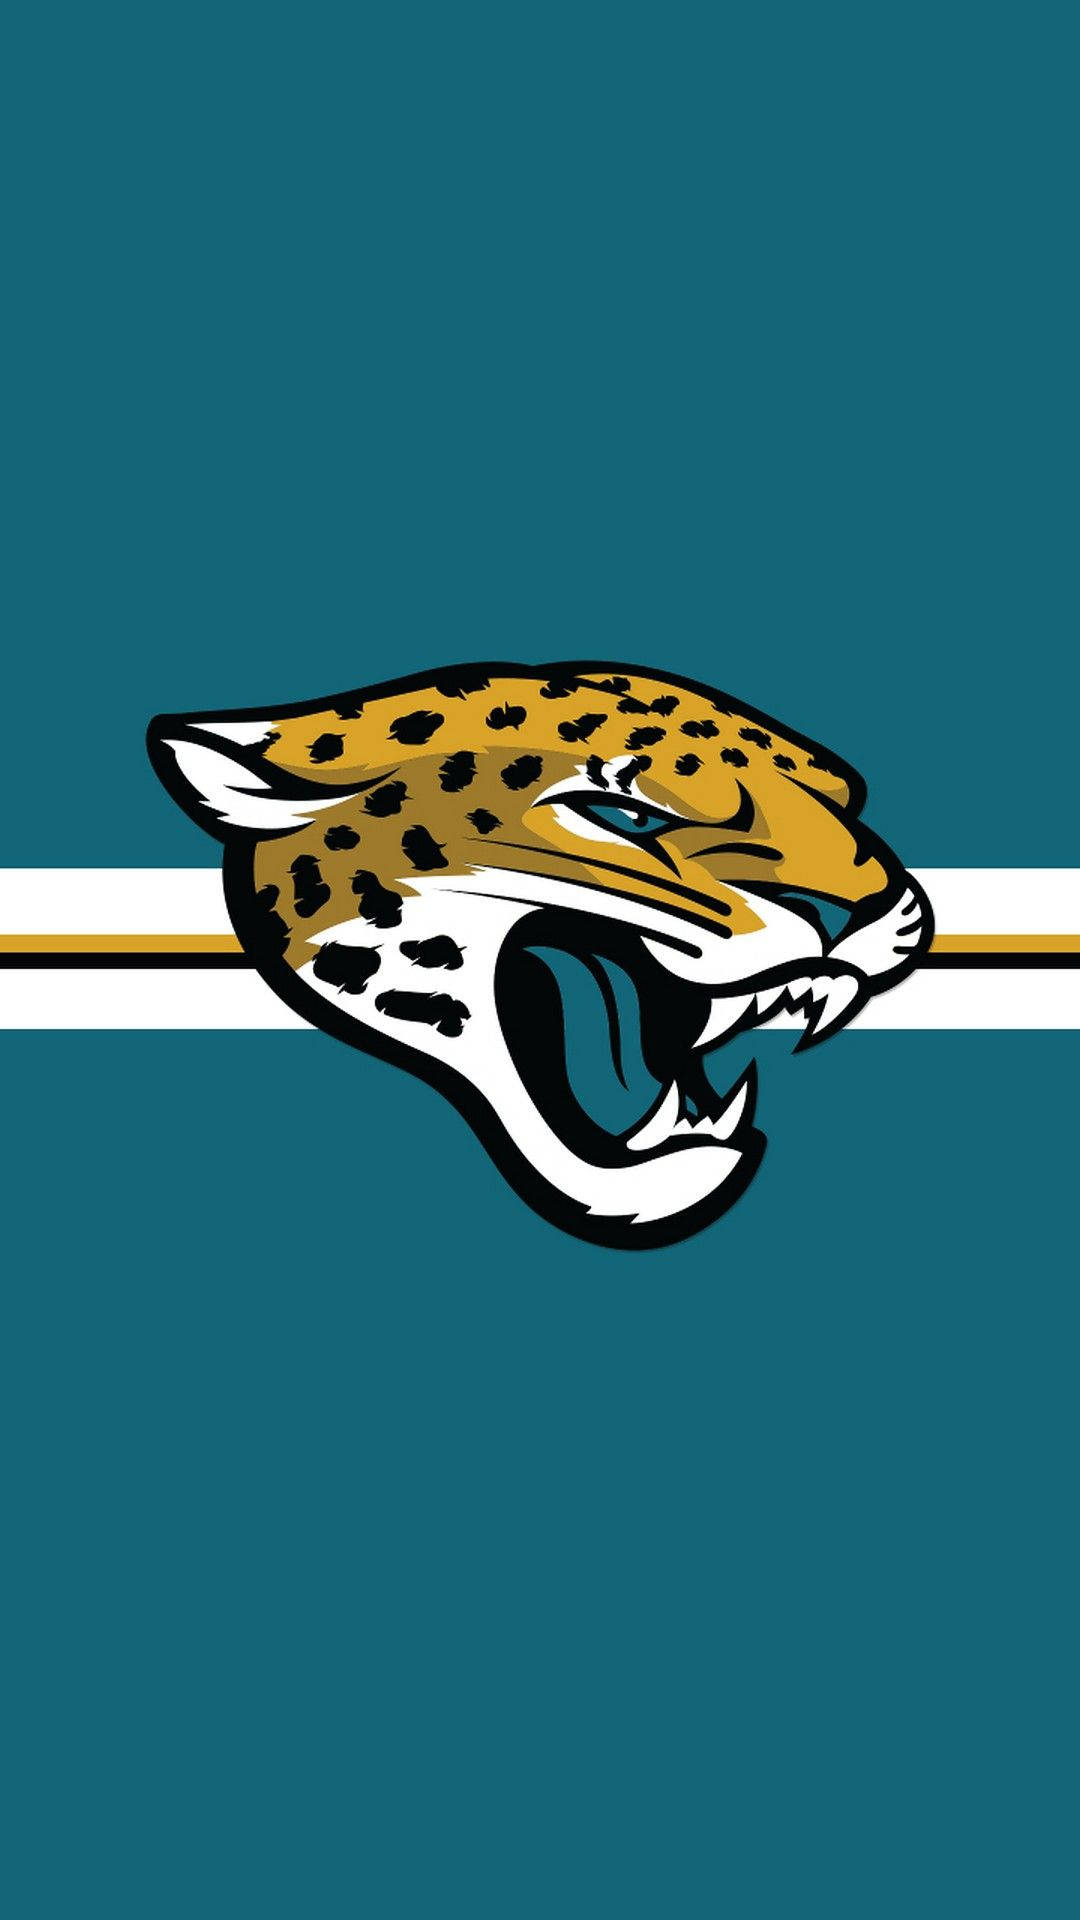 Jacksonville Jaguars Stripes Background